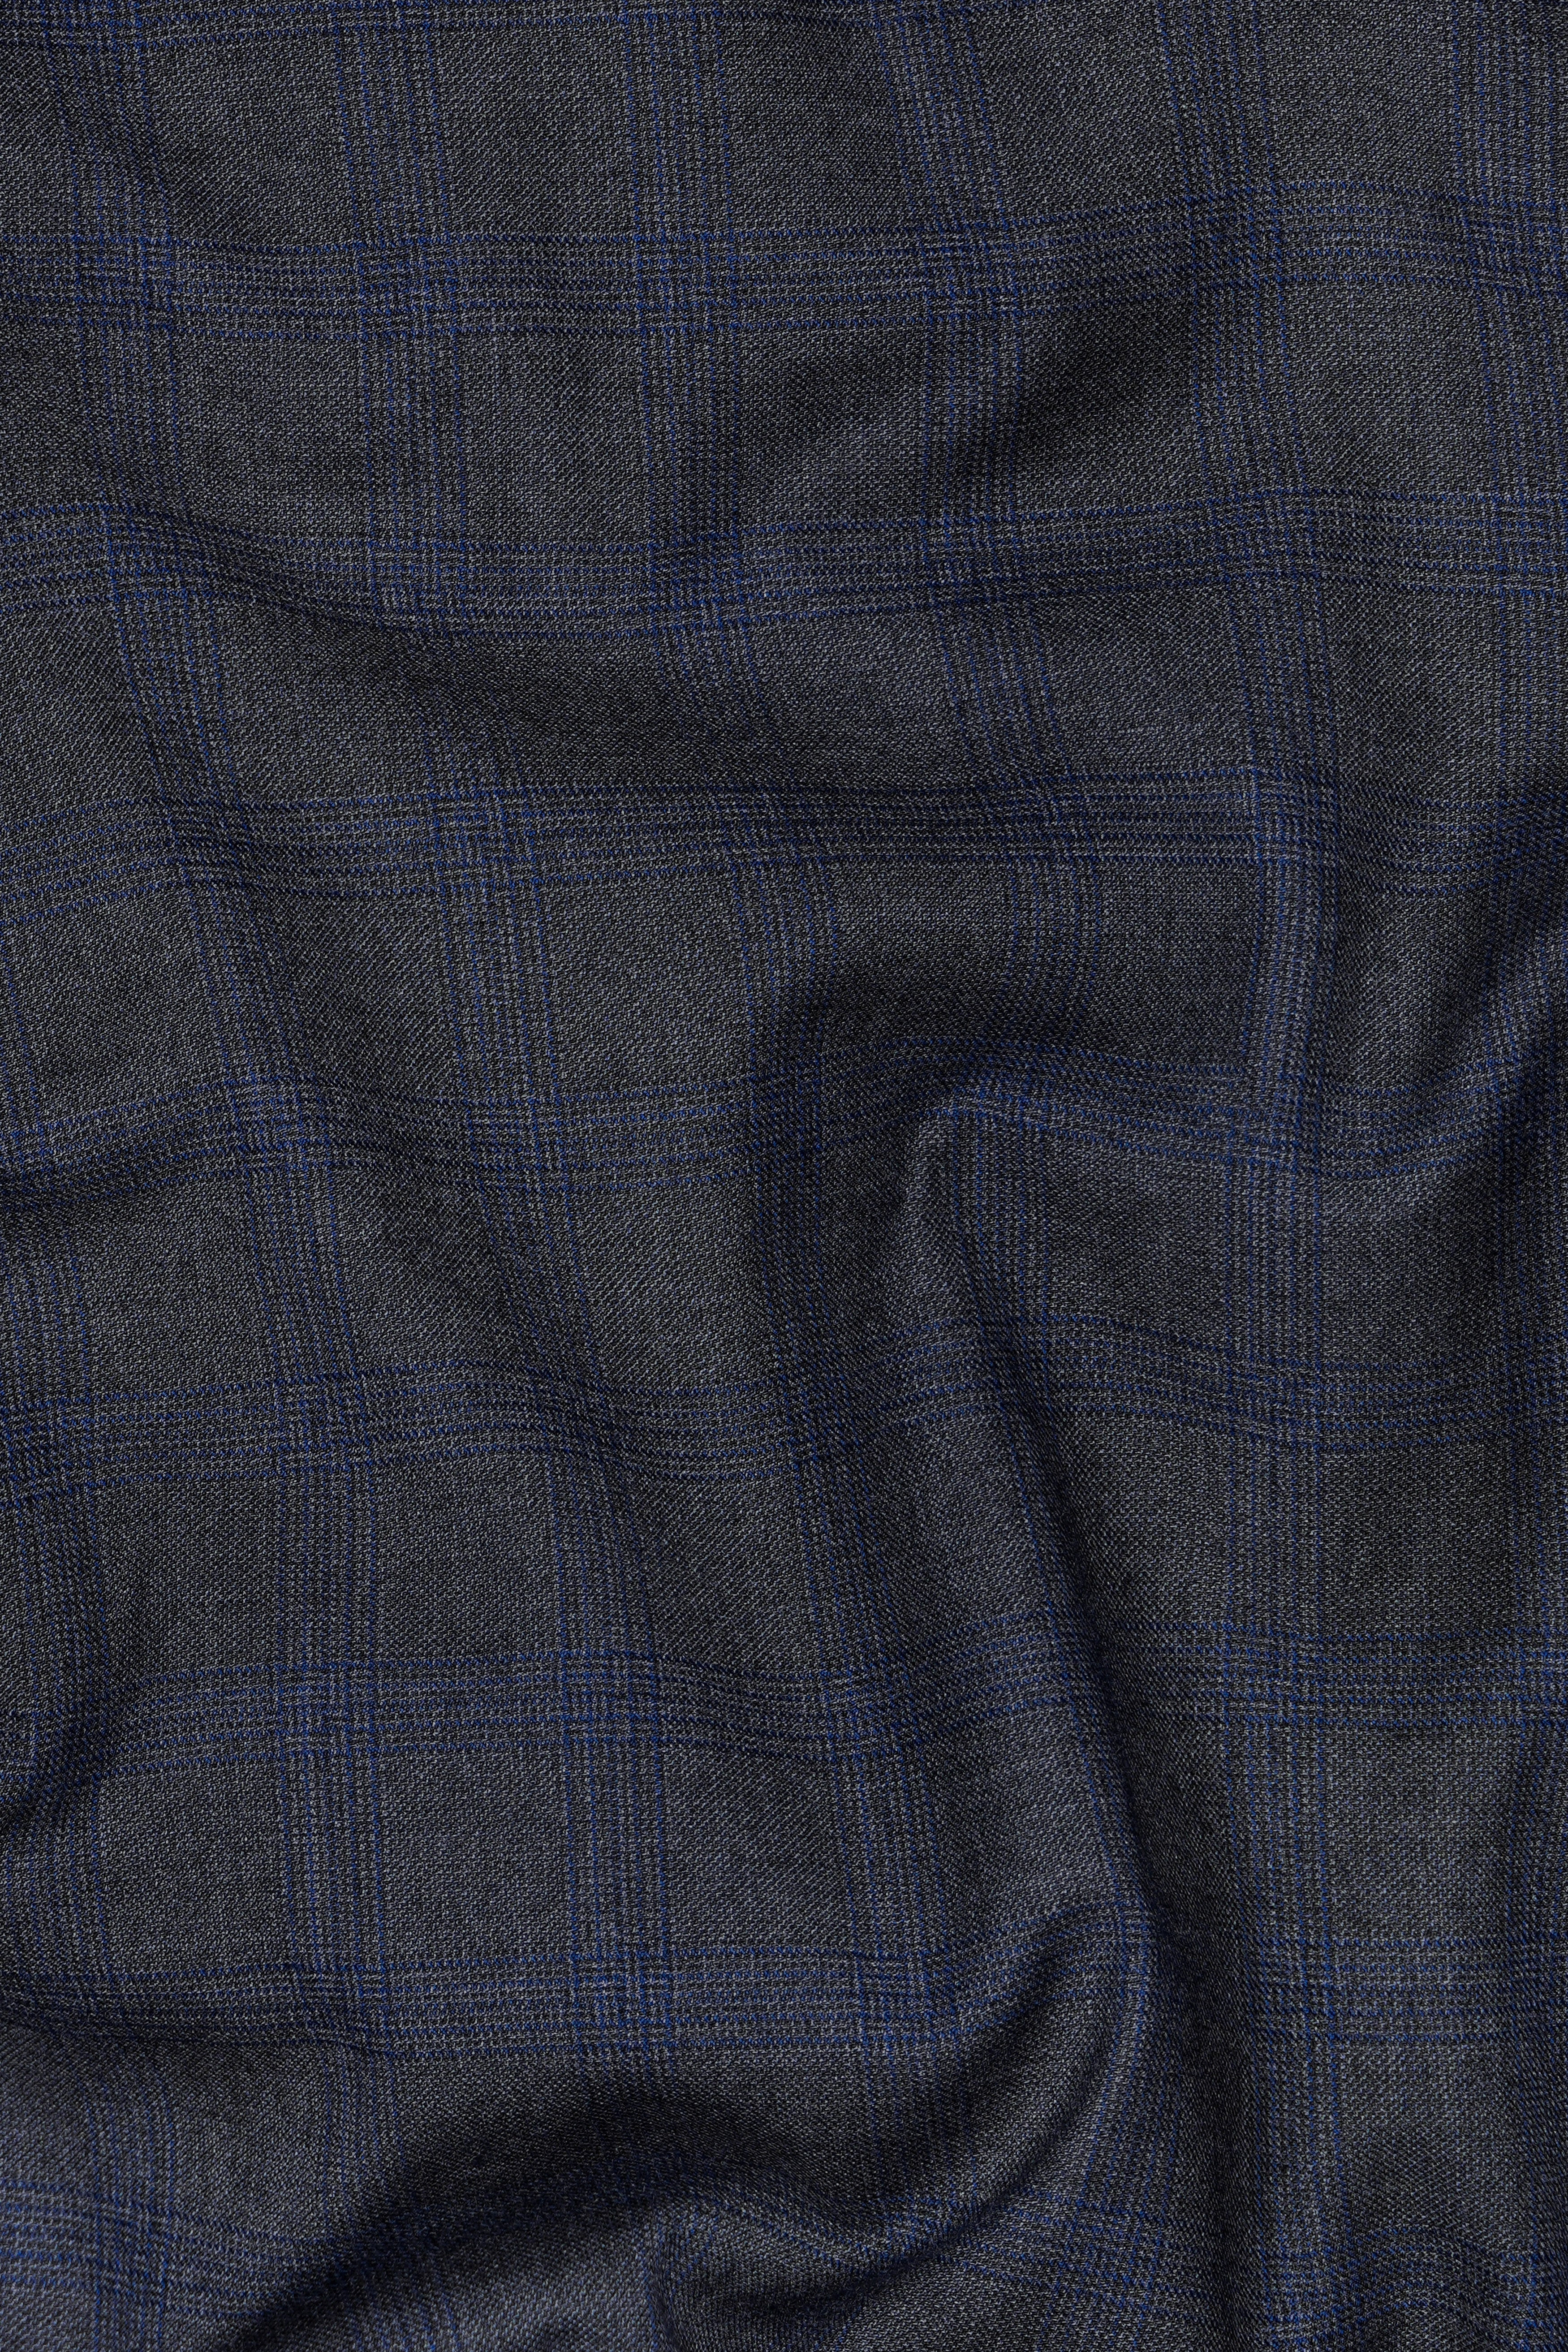 Capecod Gray and Delft Blue Subtle Checkered Wool Rich Suit ST2905-SB-36, ST2905-SB-38, ST2905-SB-40, ST2905-SB-42, ST2905-SB-44, ST2905-SB-46, ST2905-SB-48, ST2905-SB-50, ST2905-SB-52, ST2905-SB-54, ST2905-SB-56, ST2905-SB-58, ST2905-SB-60